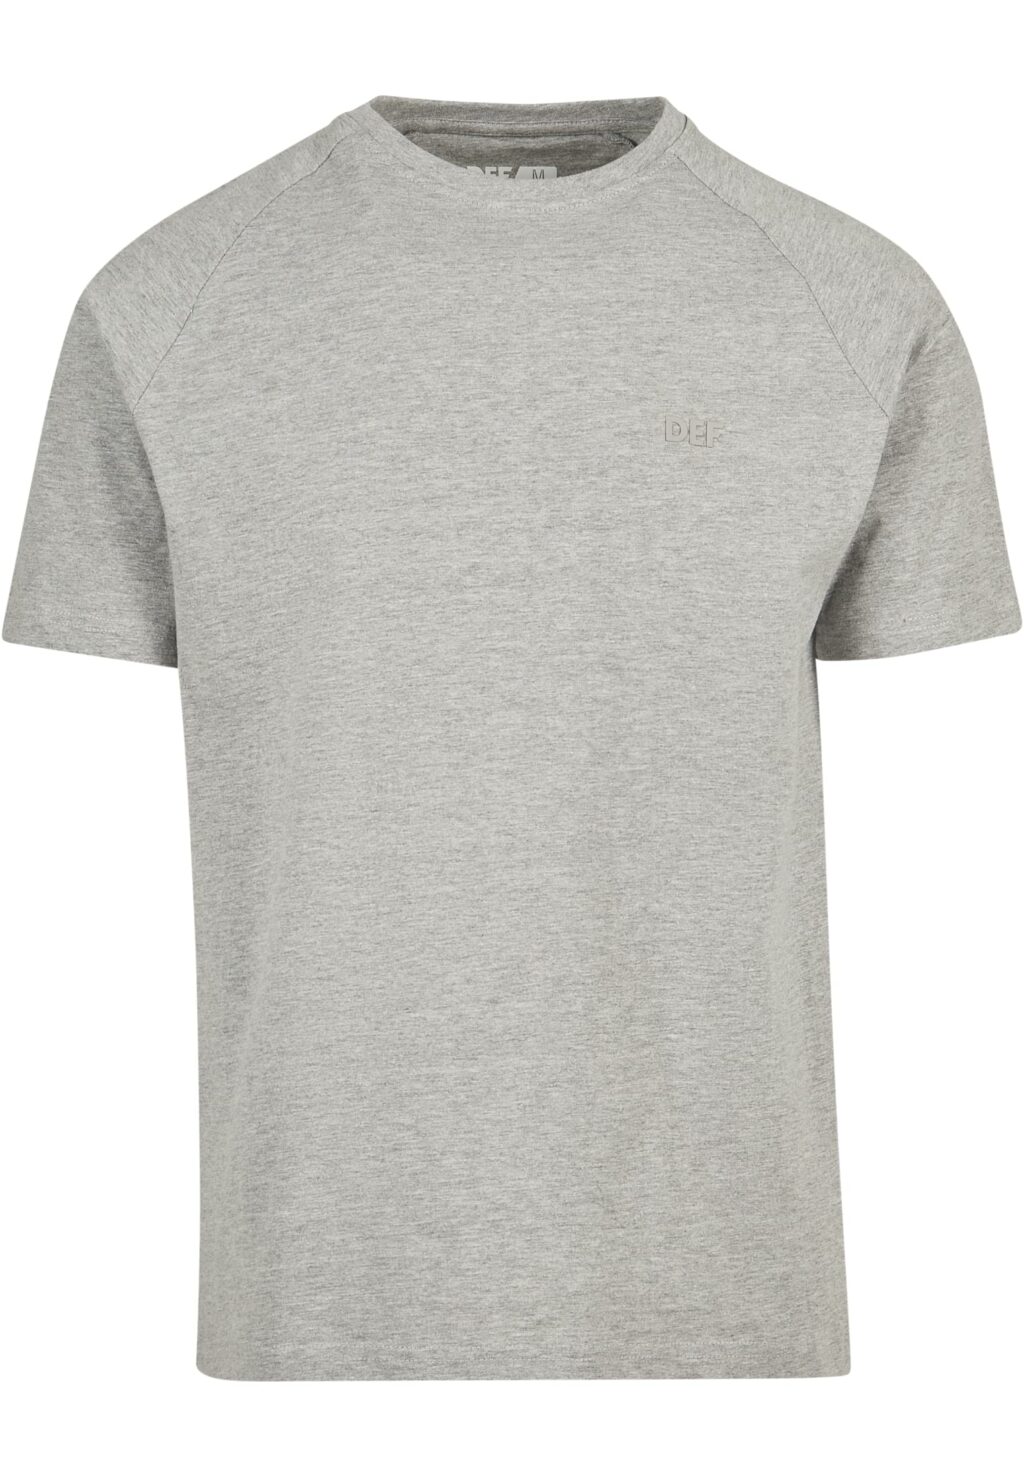 DEF Kai T-Shirt Grey Melange grey DFTS142GM